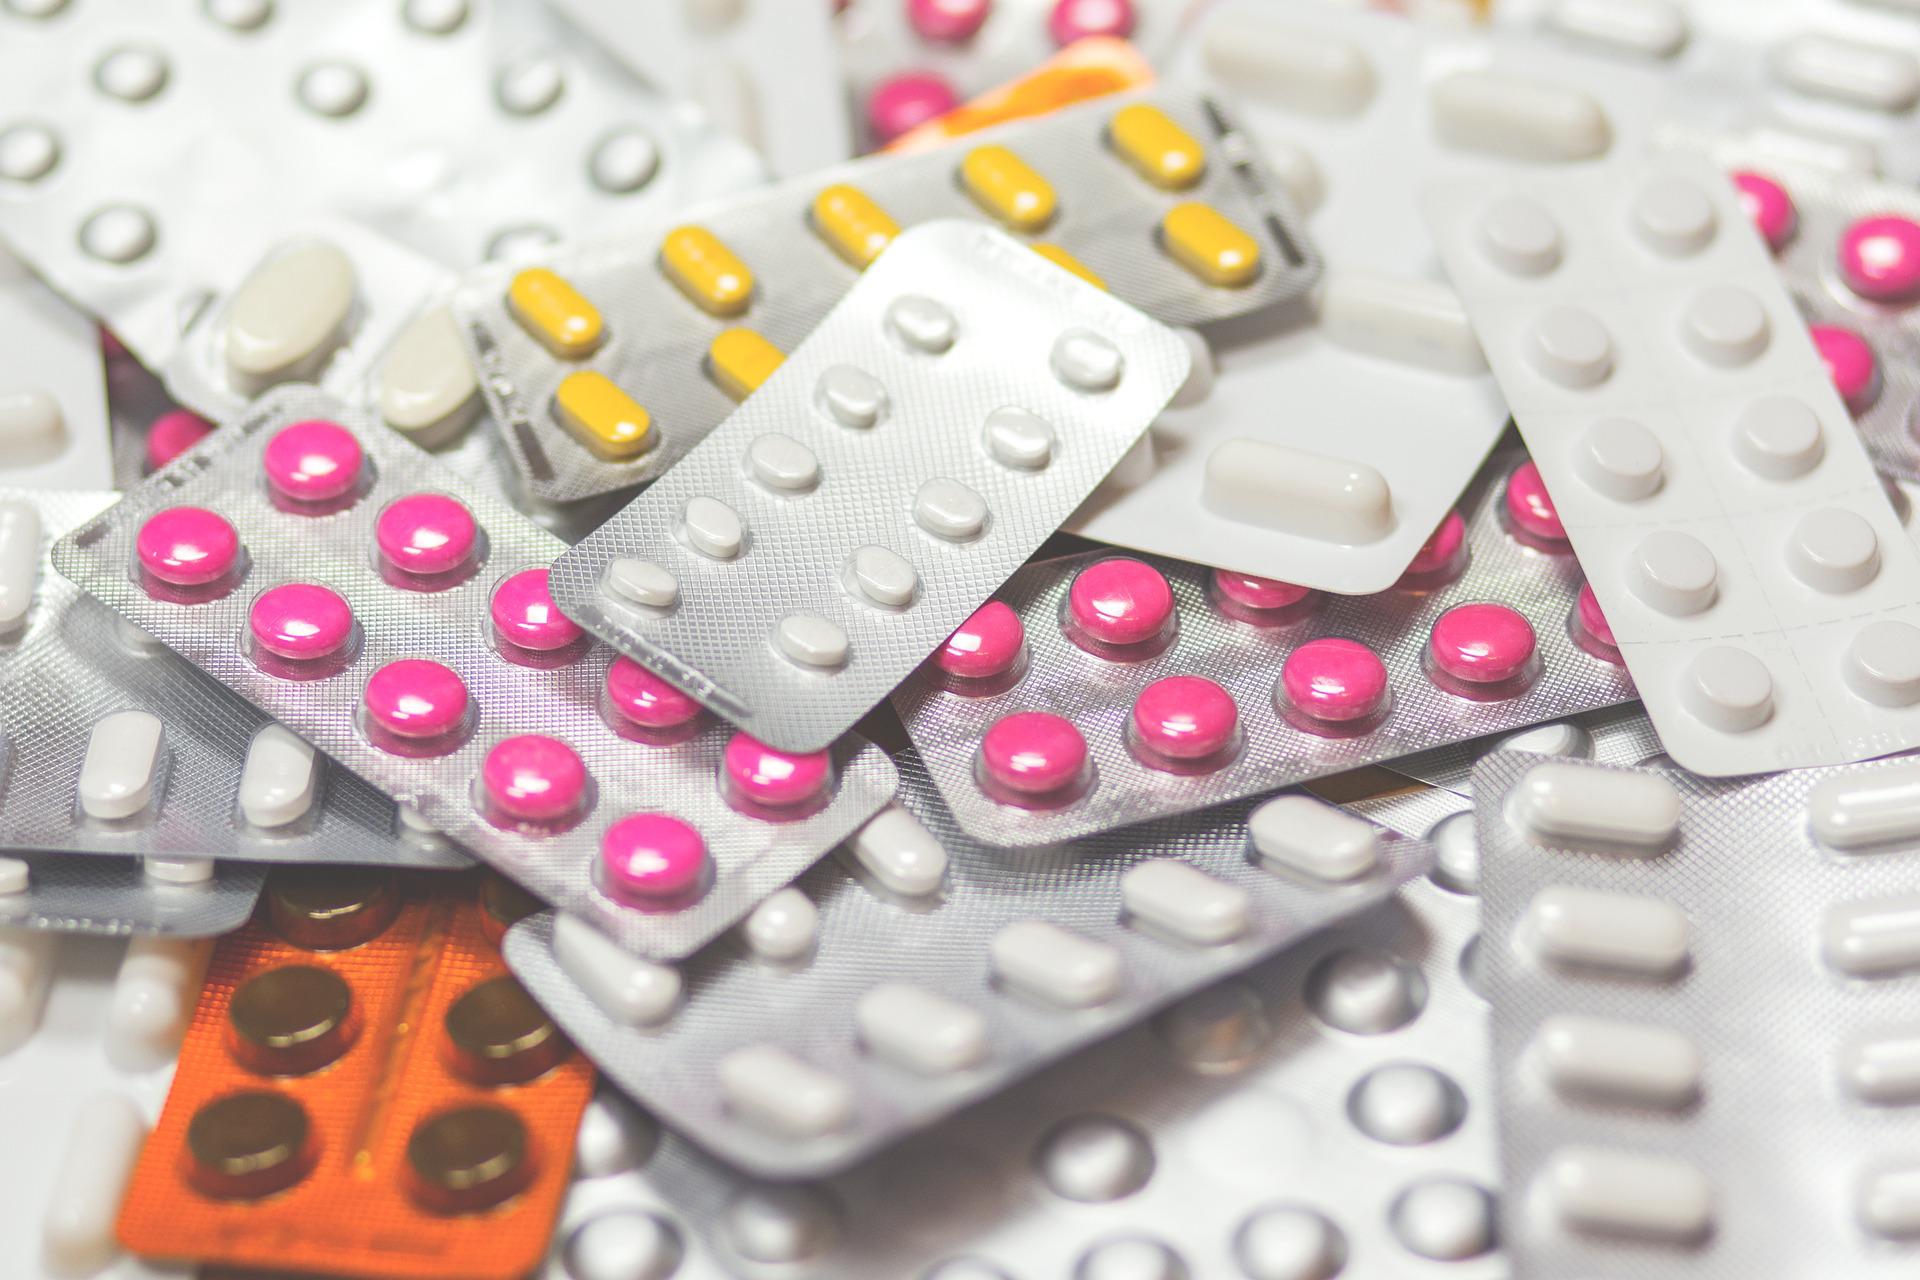 Macomer. Distribuzione farmaci sospesa lunedì 27 marzo